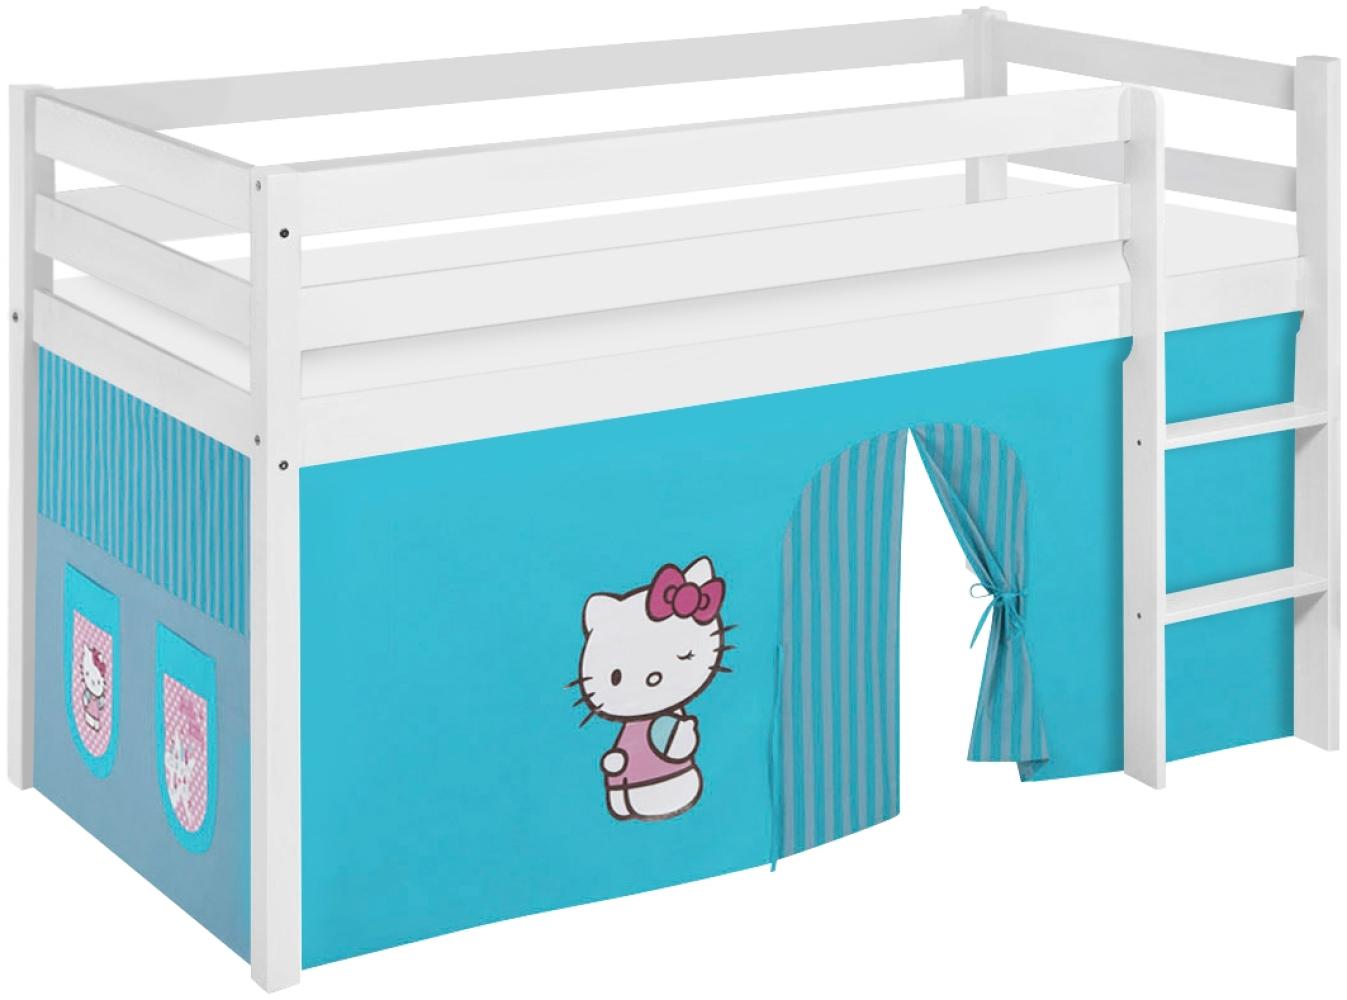 Lilokids 'Jelle' Spielbett 90 x 200 cm, Hello Kitty Türkis, Kiefer massiv, mit Vorhang Bild 1